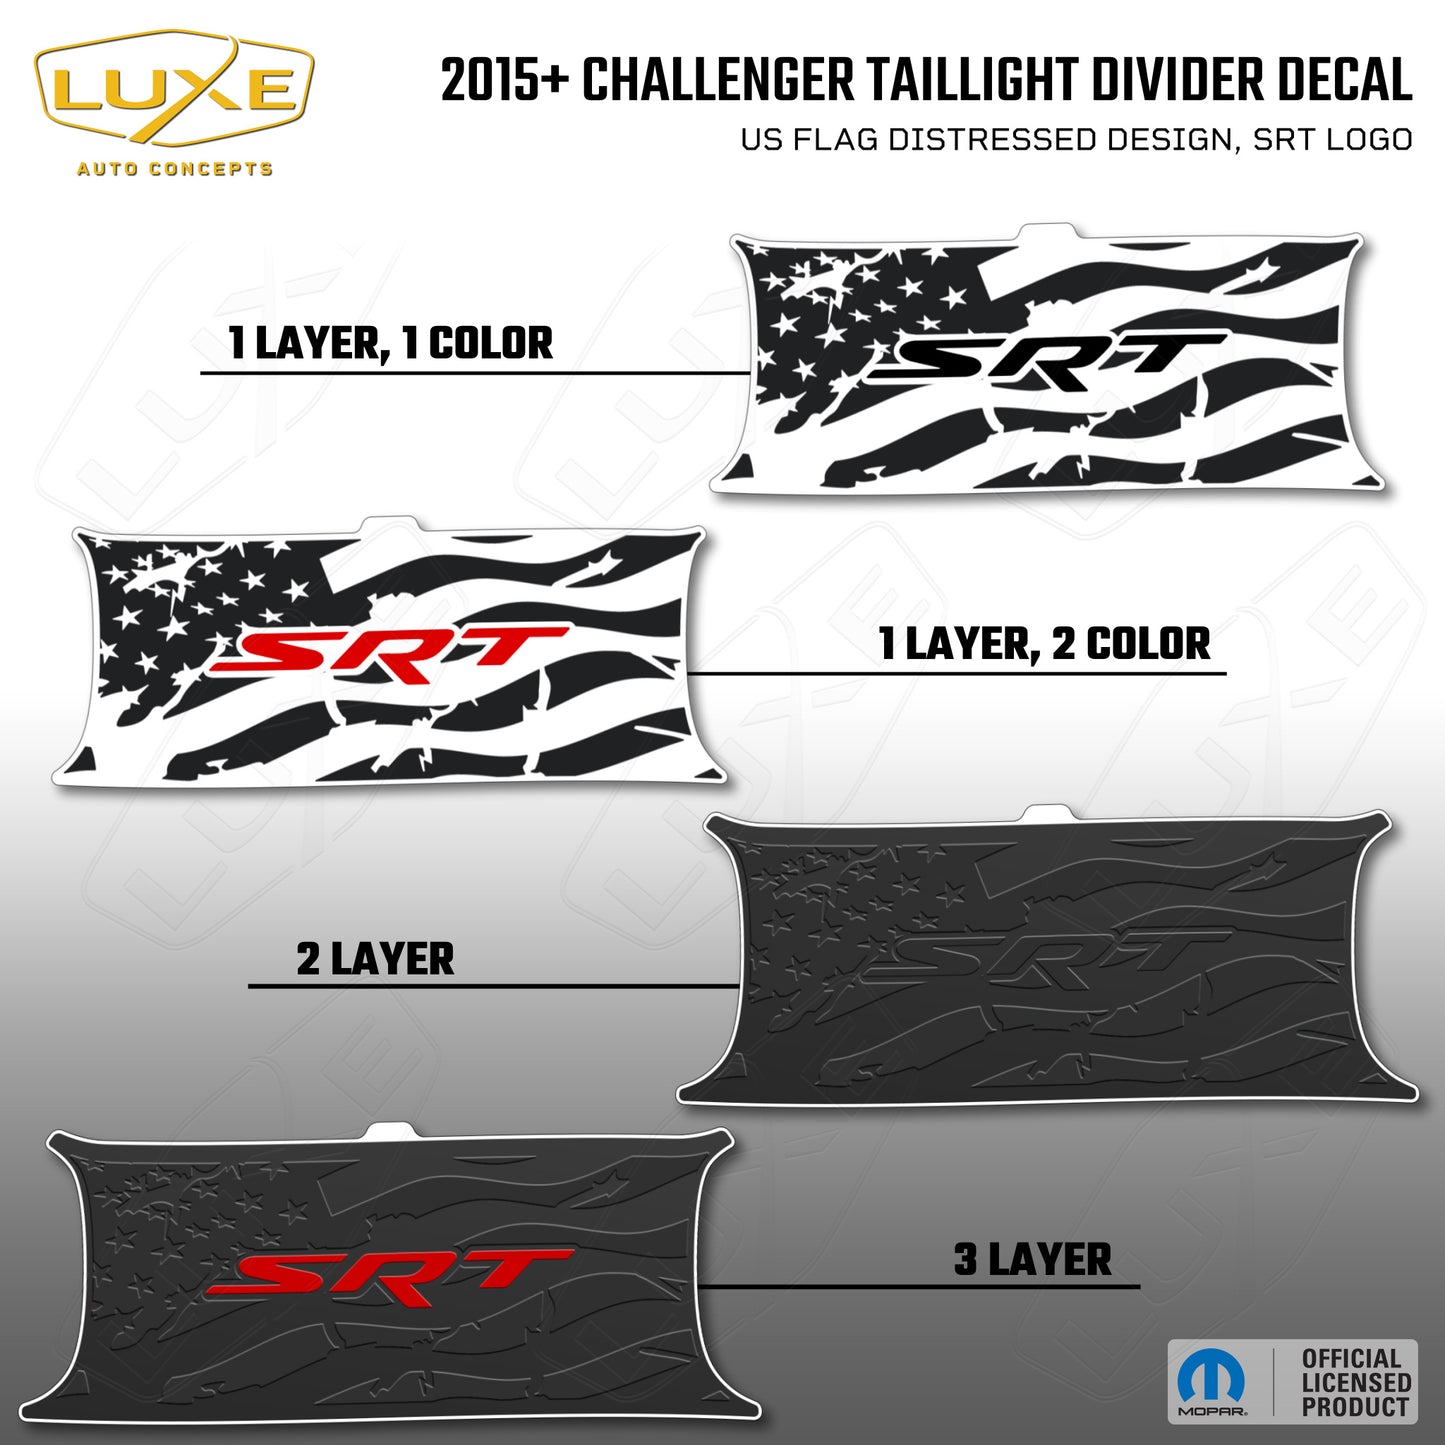 2015+ Challenger Taillight Center Divider Decal - US Flag Distressed Design, SRT Logo